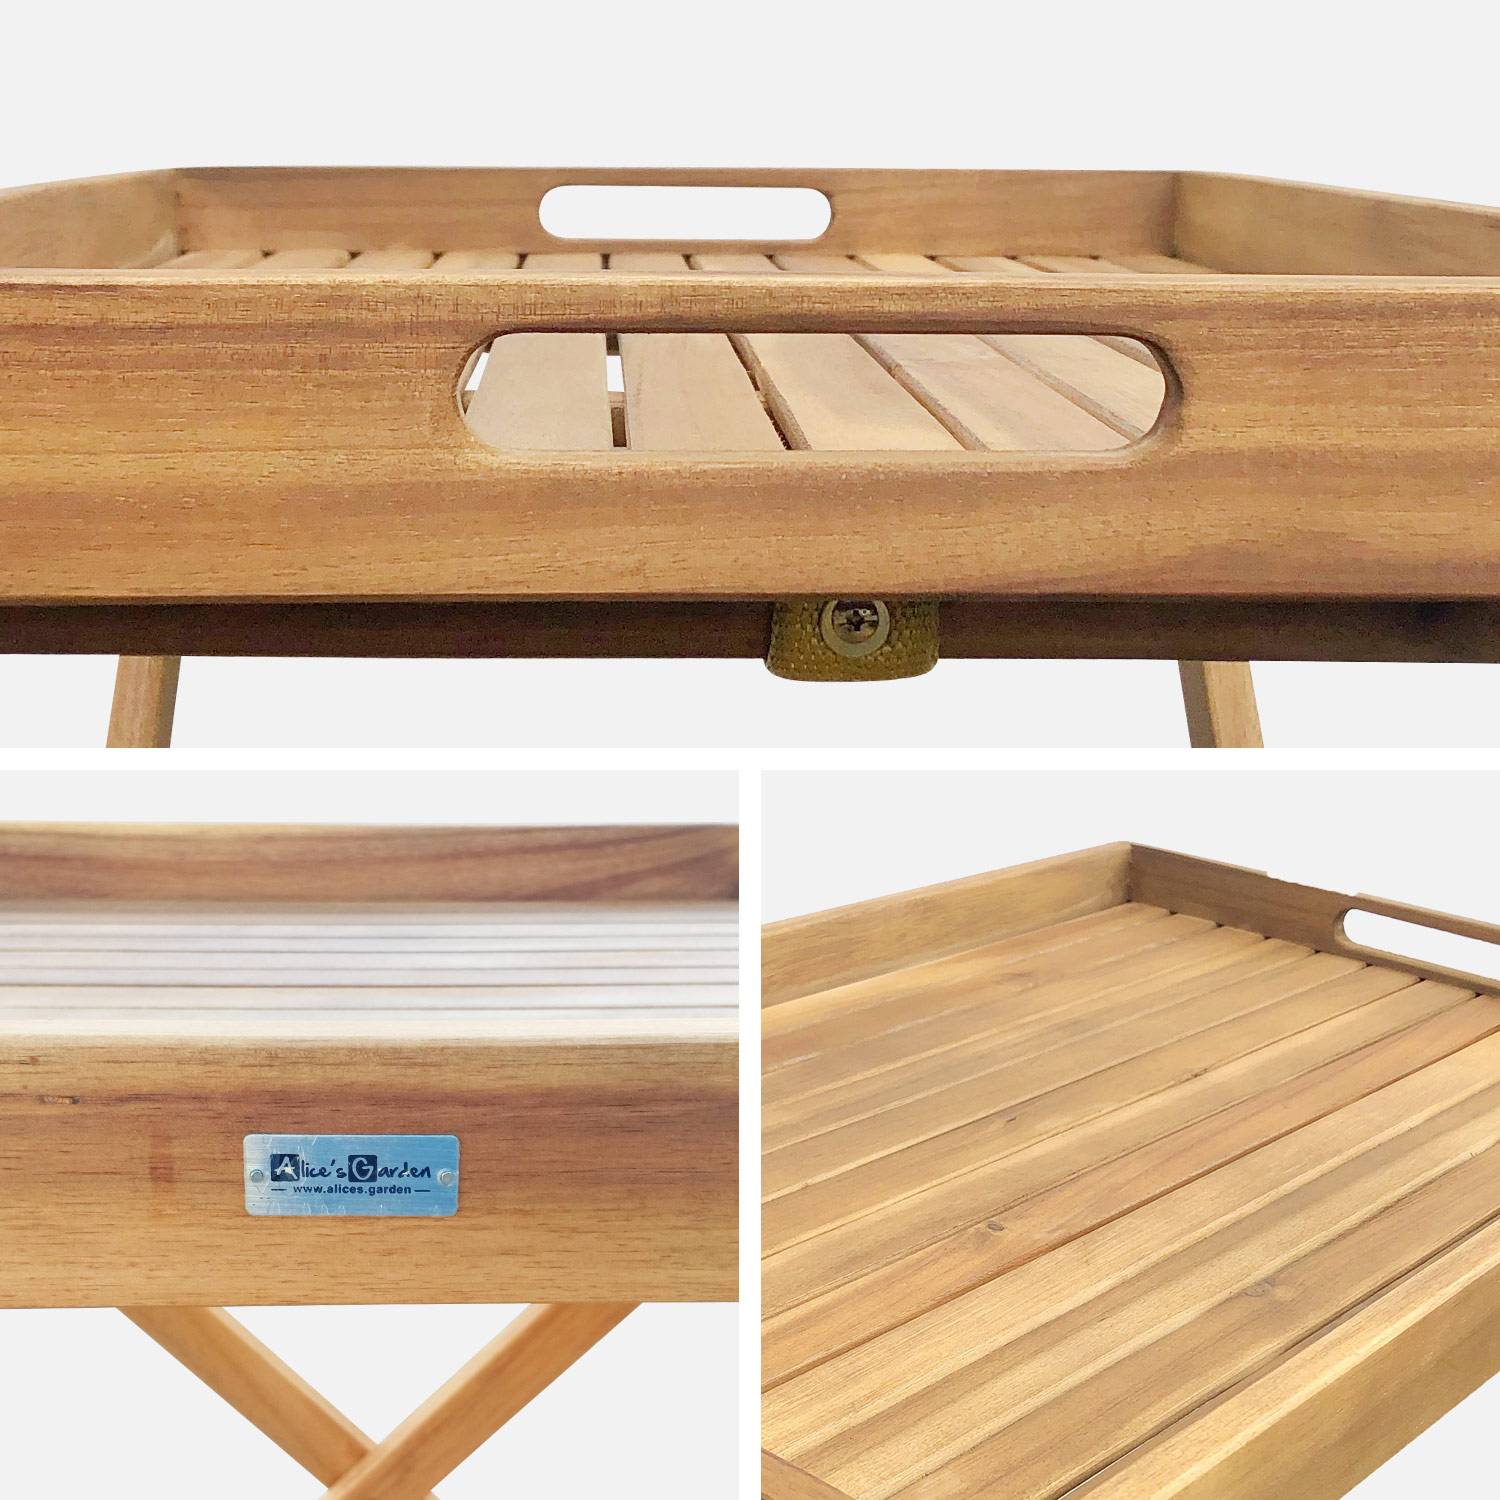 Tavolino da giardino, in legno, dimensioni: 68x44cm - modello: Murcia - Ripiano rimovibile su supporto, tavolo complementare, tavolino basso,sweeek,Photo5